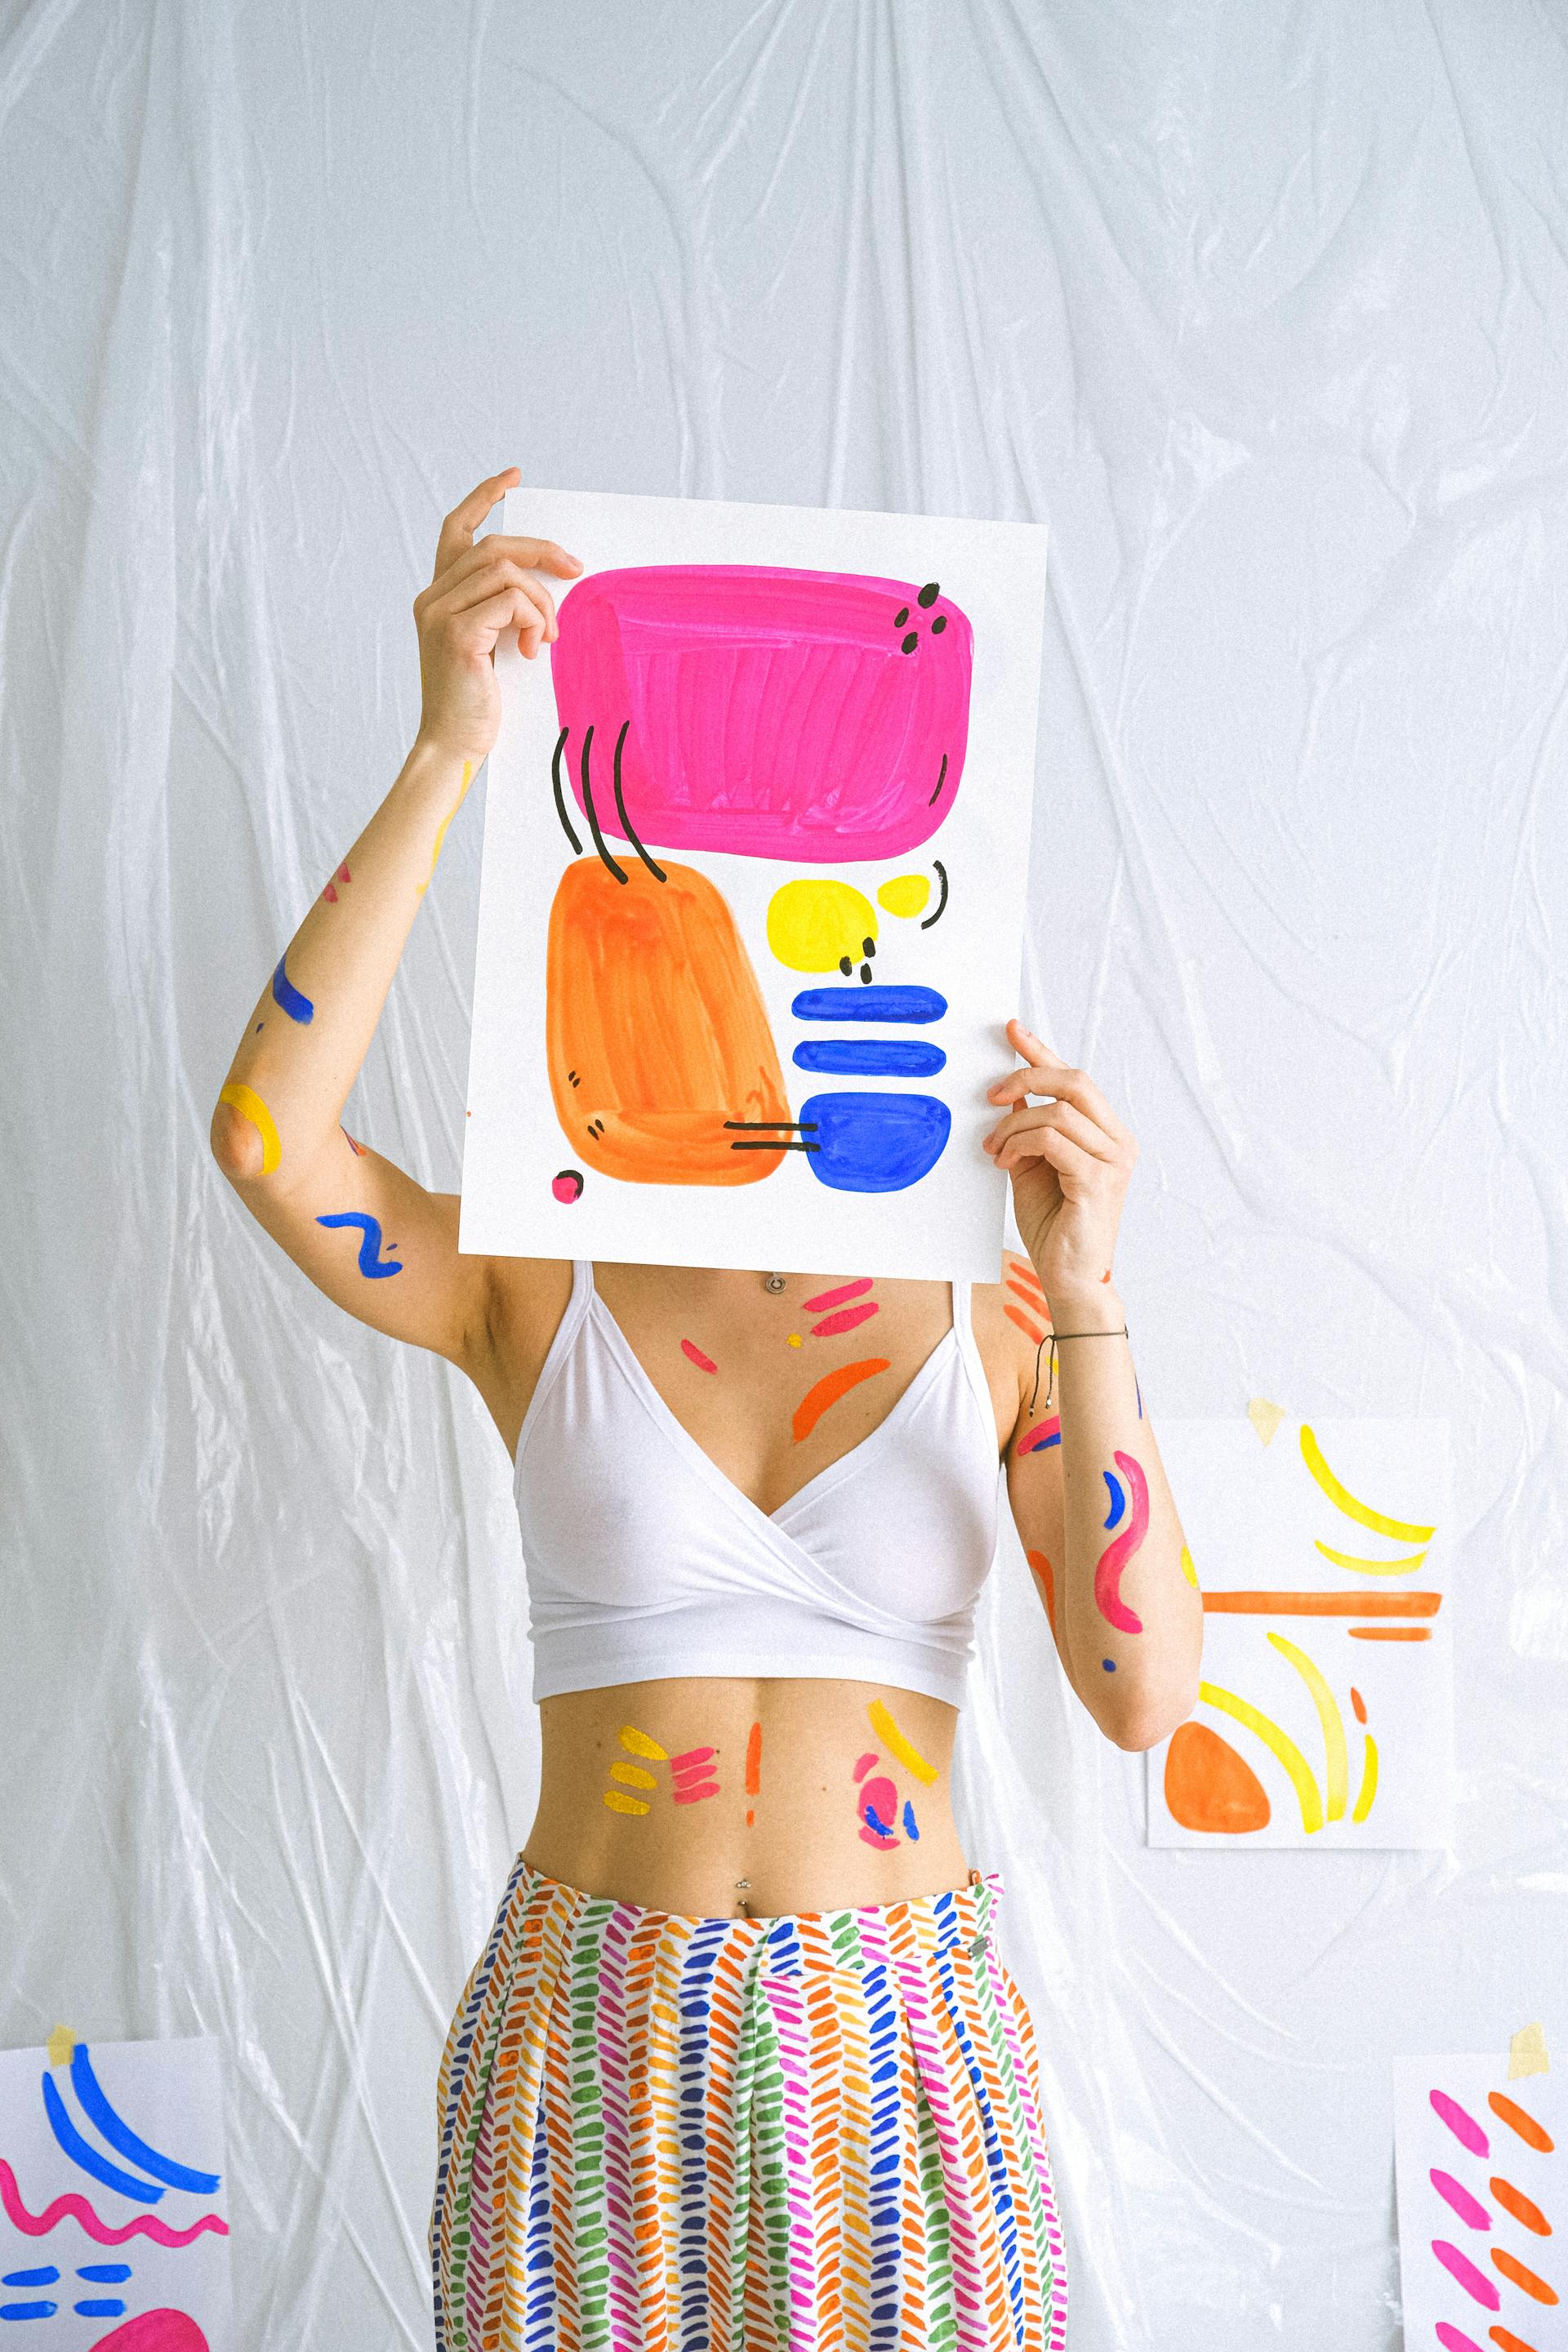 Una persona sosteniendo su arte | Fuente: Pexels